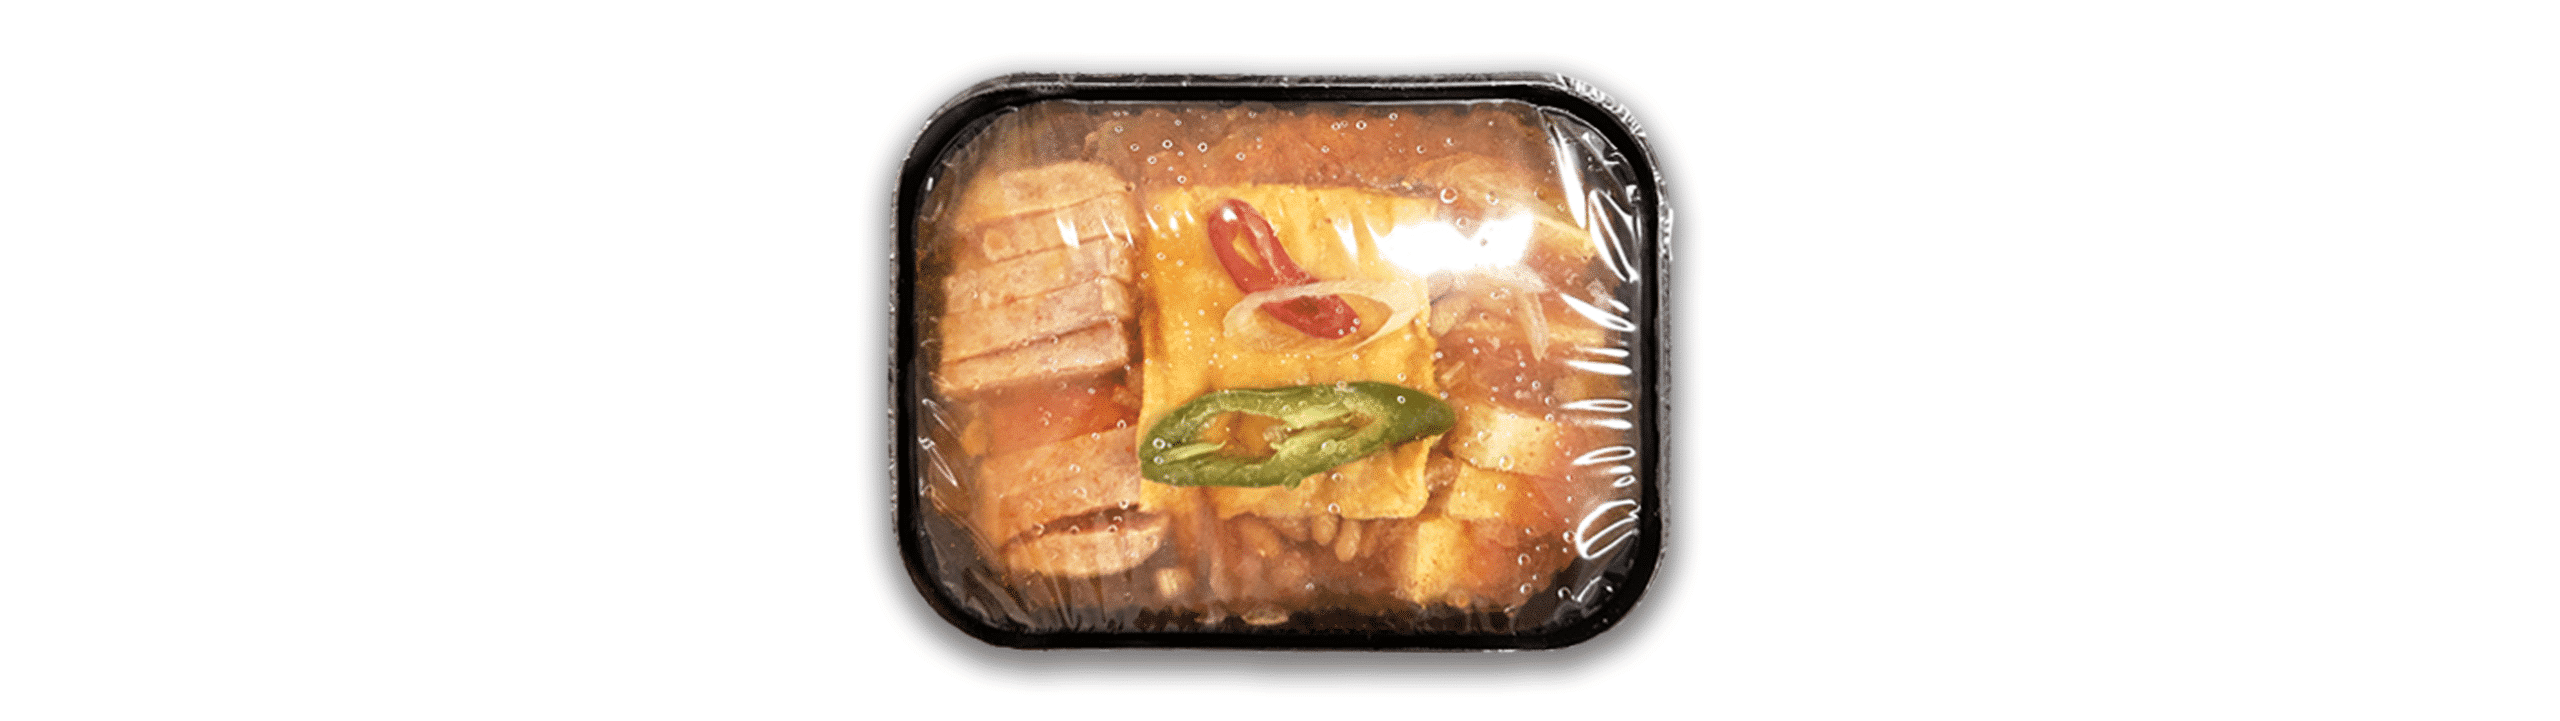 韓國食品-[신세계마트] 부대찌개 밀키트 1.5kg (냉동) *라면사리 증정!